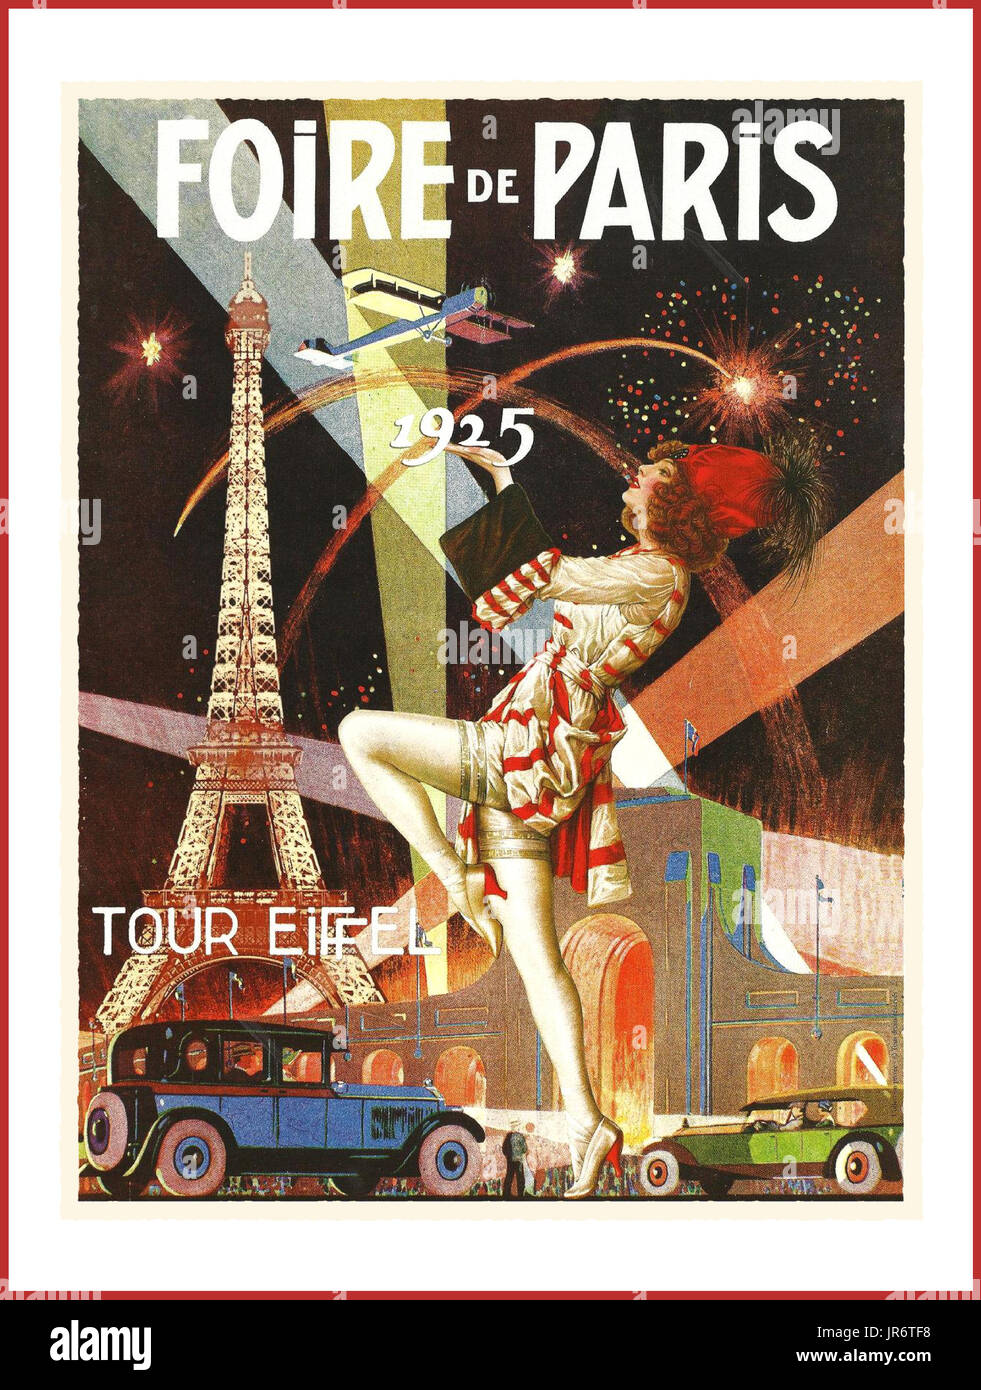 VINTAGE POSTER PARIS VINTAGE voyage français affiche art déco des années 1920, la publicité Paris juste.''' FOIRE DE PARIS 1925 Banque D'Images